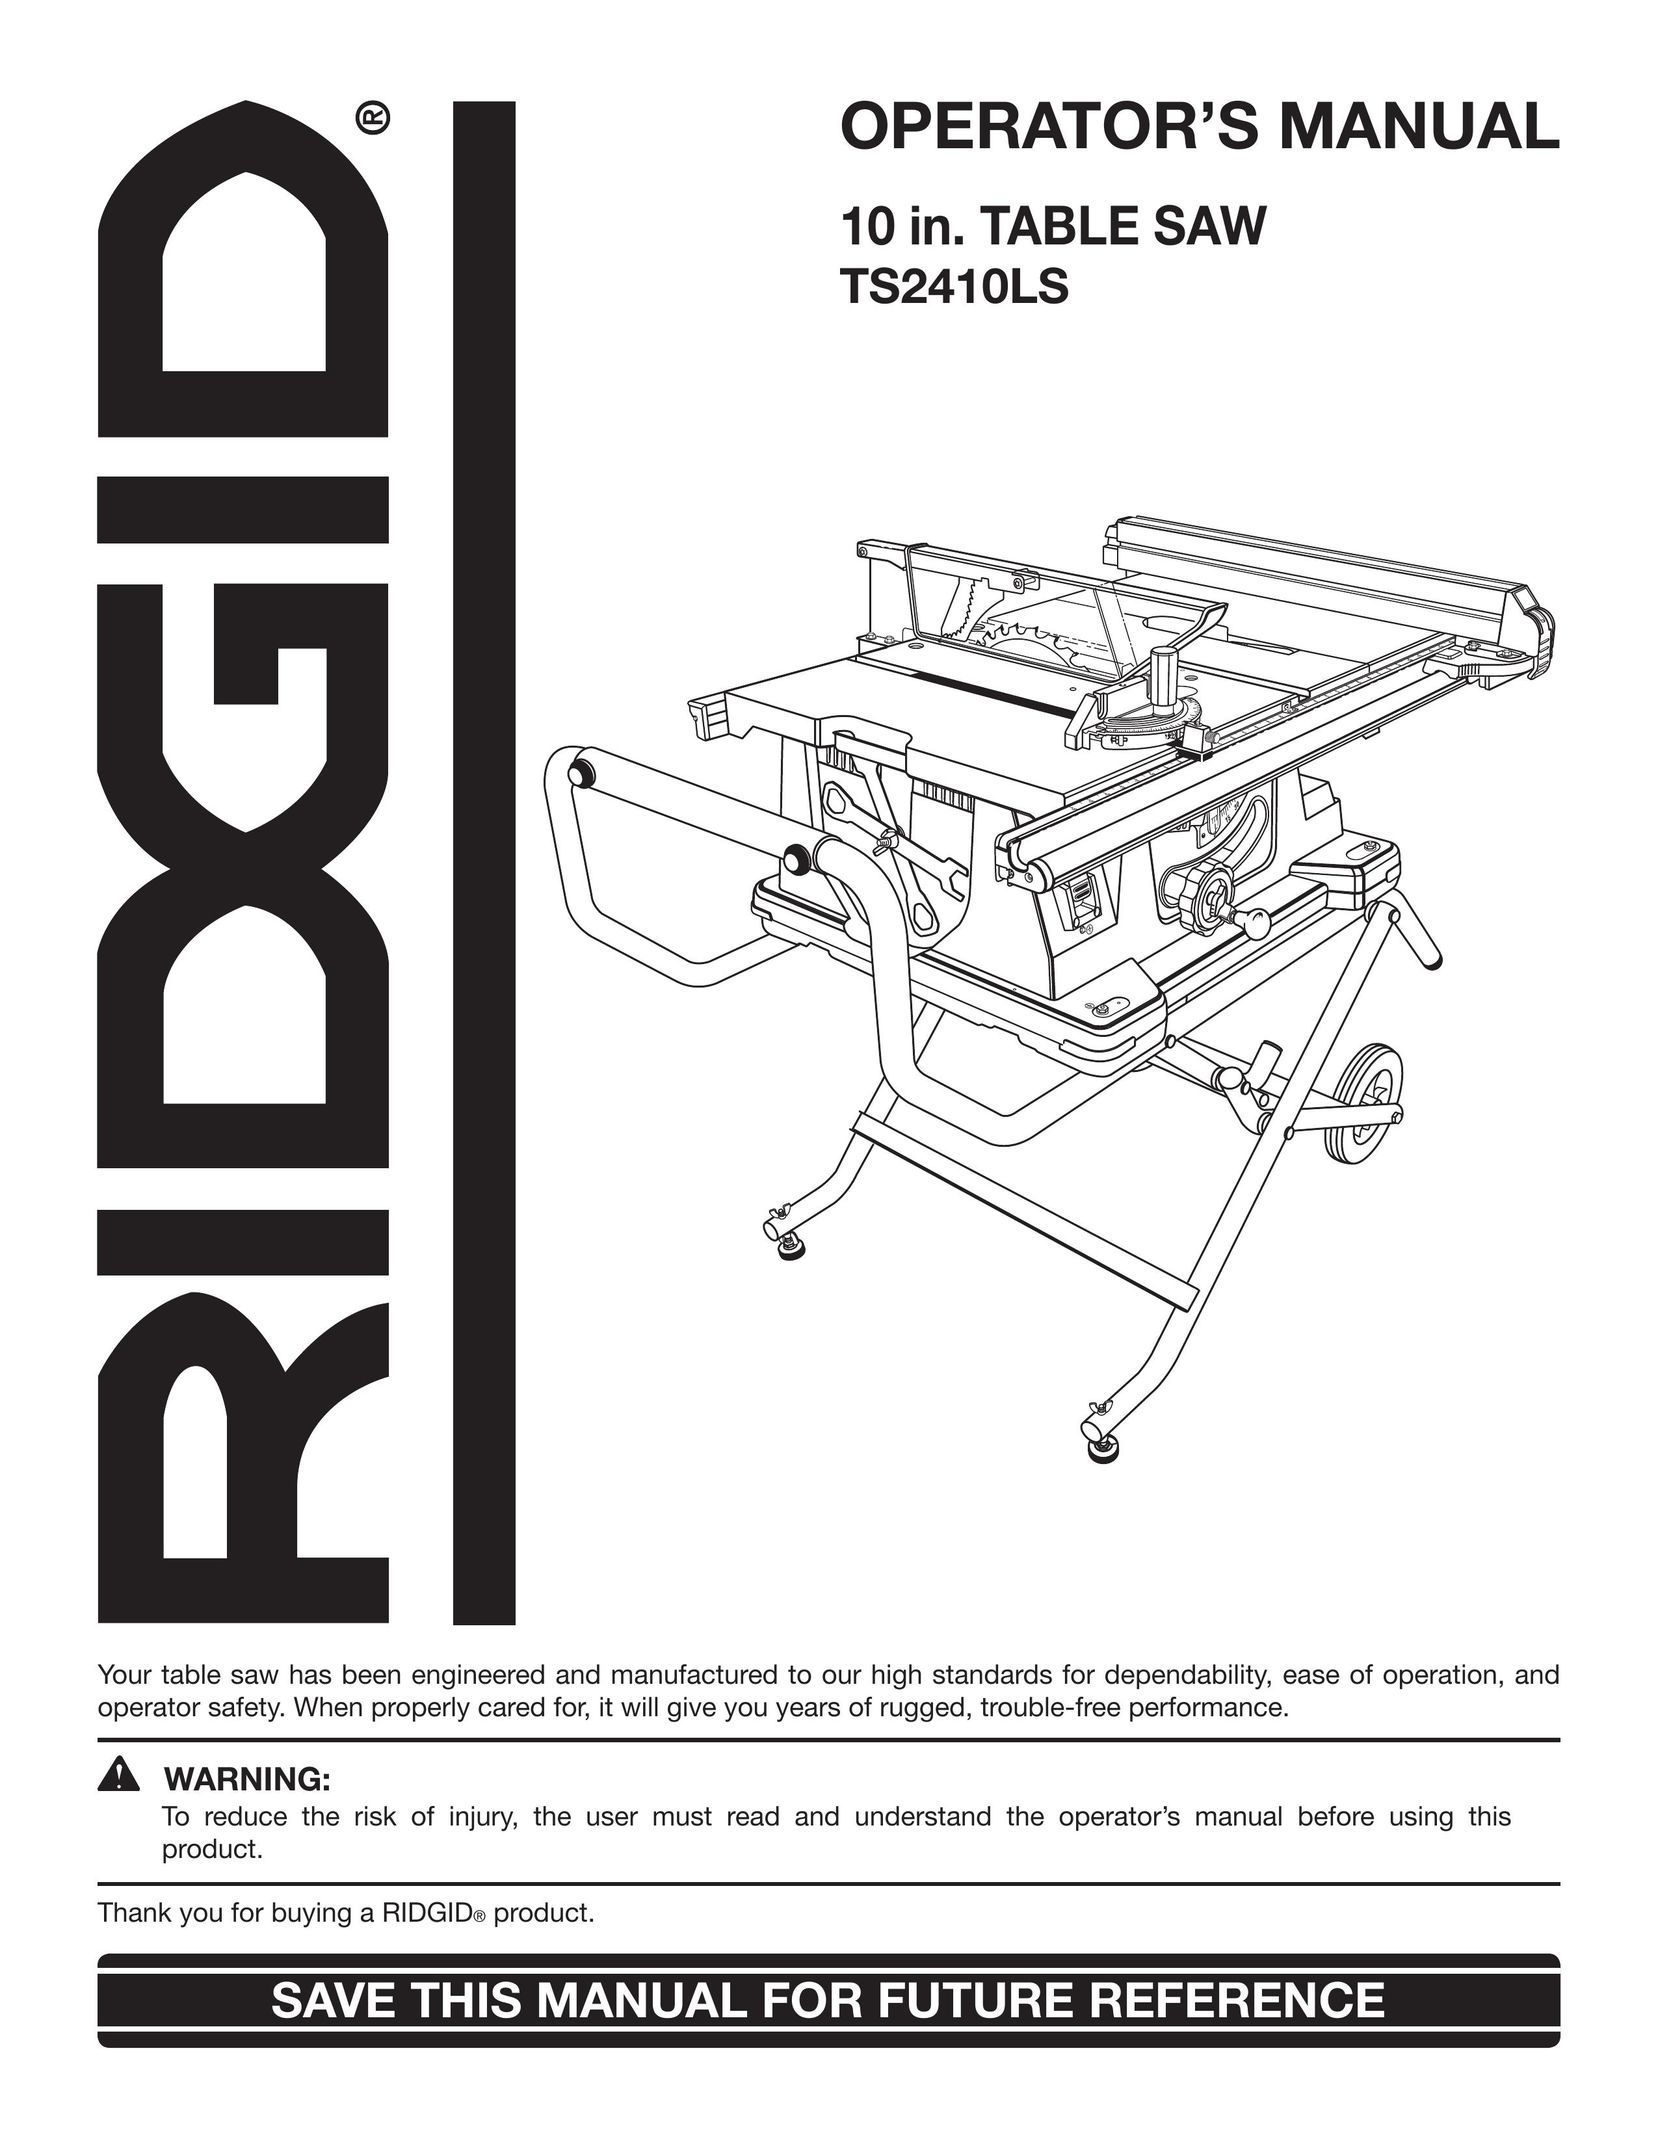 RIDGID TS2410LS Saw User Manual